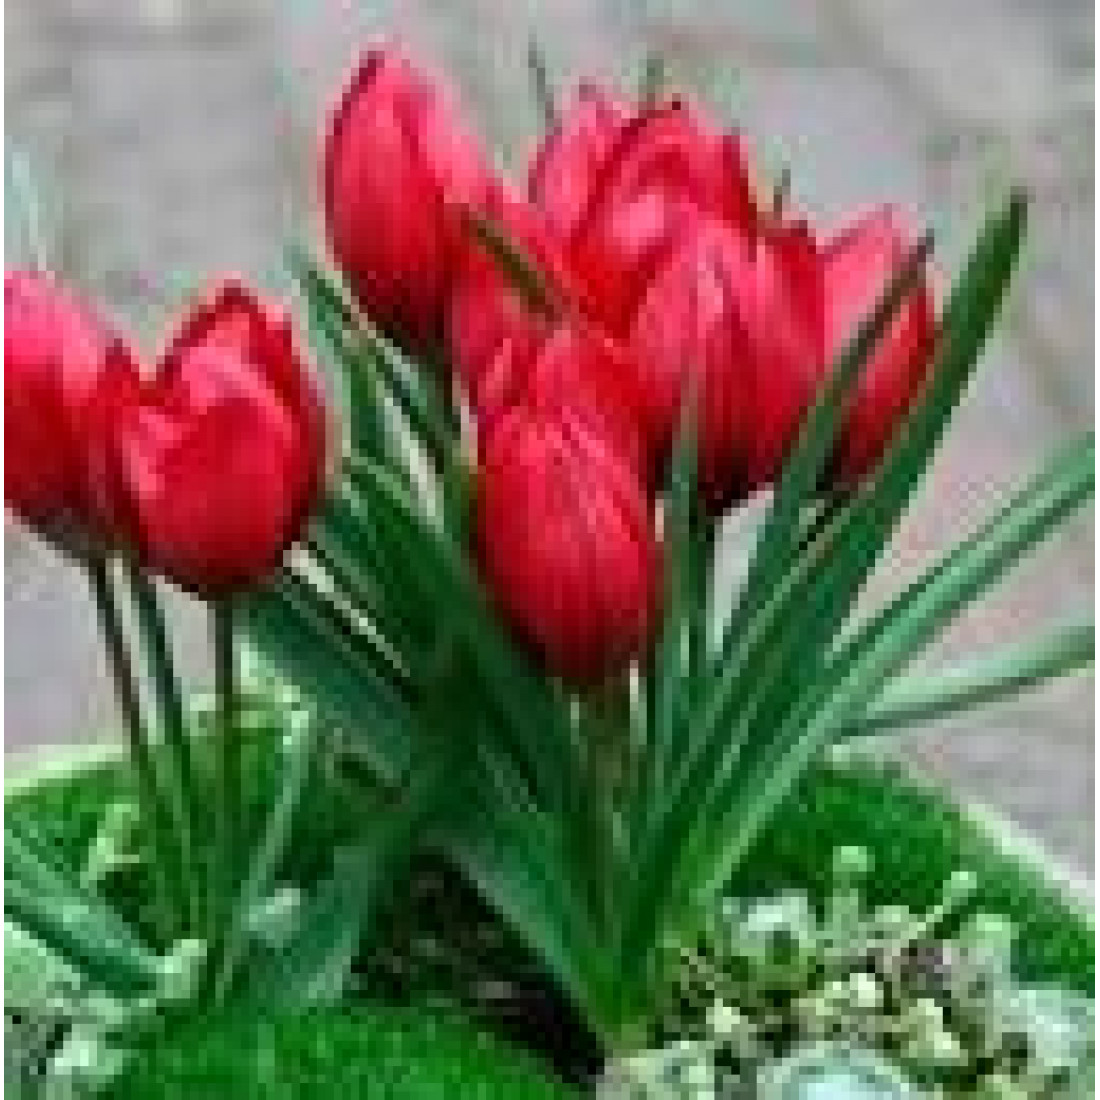 Тюльпан Ботанический лилипут